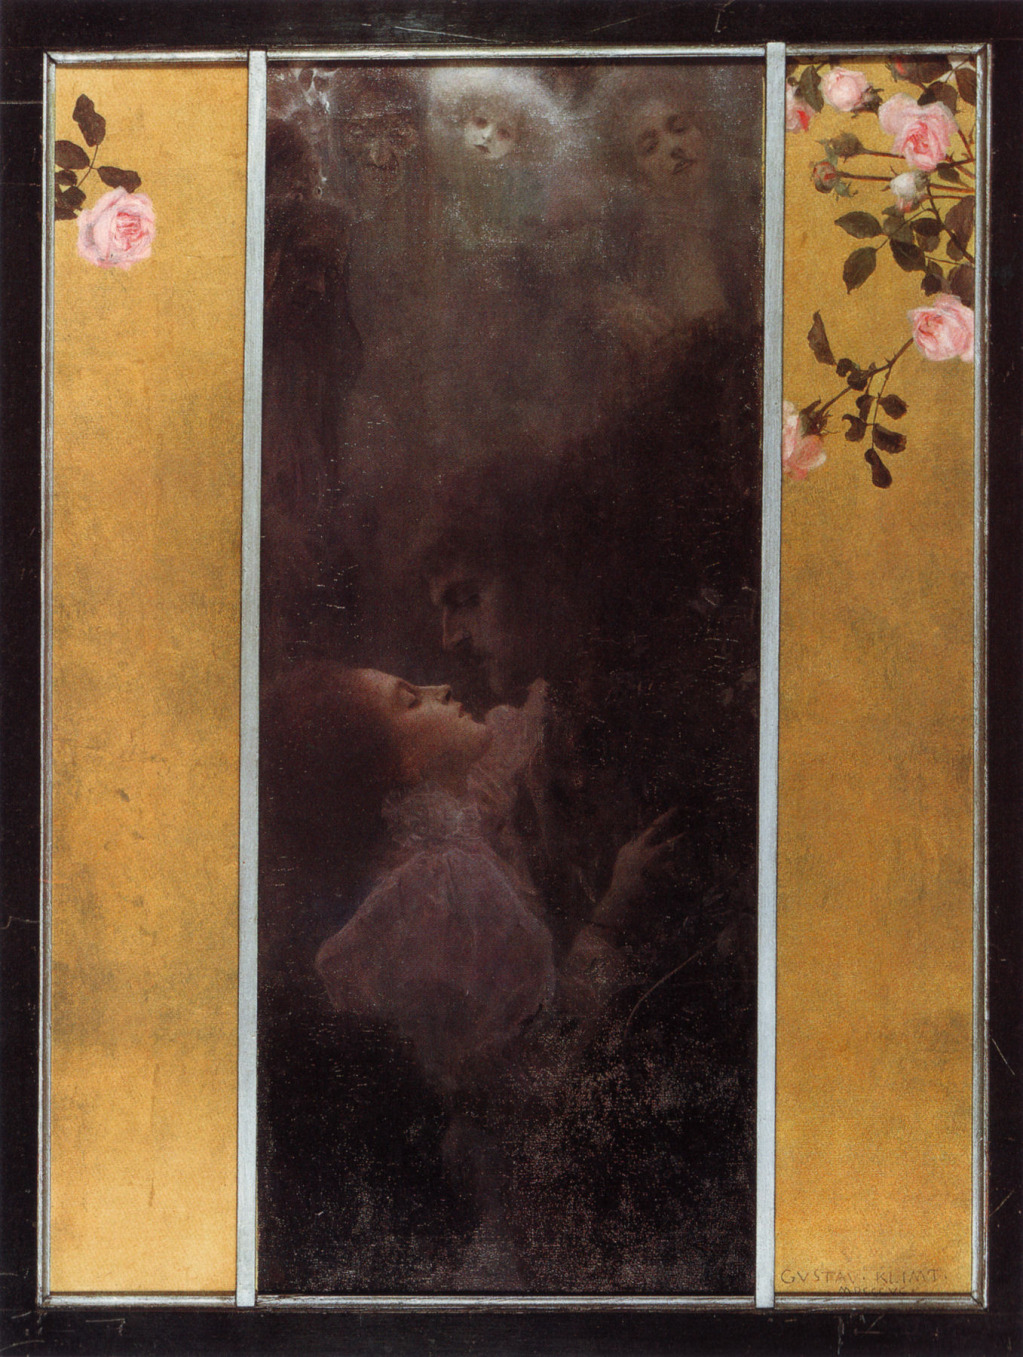 爱 by 古斯塔夫· 克林姆特画 - 1895 -  60 x 44 cm 艺术史博物馆